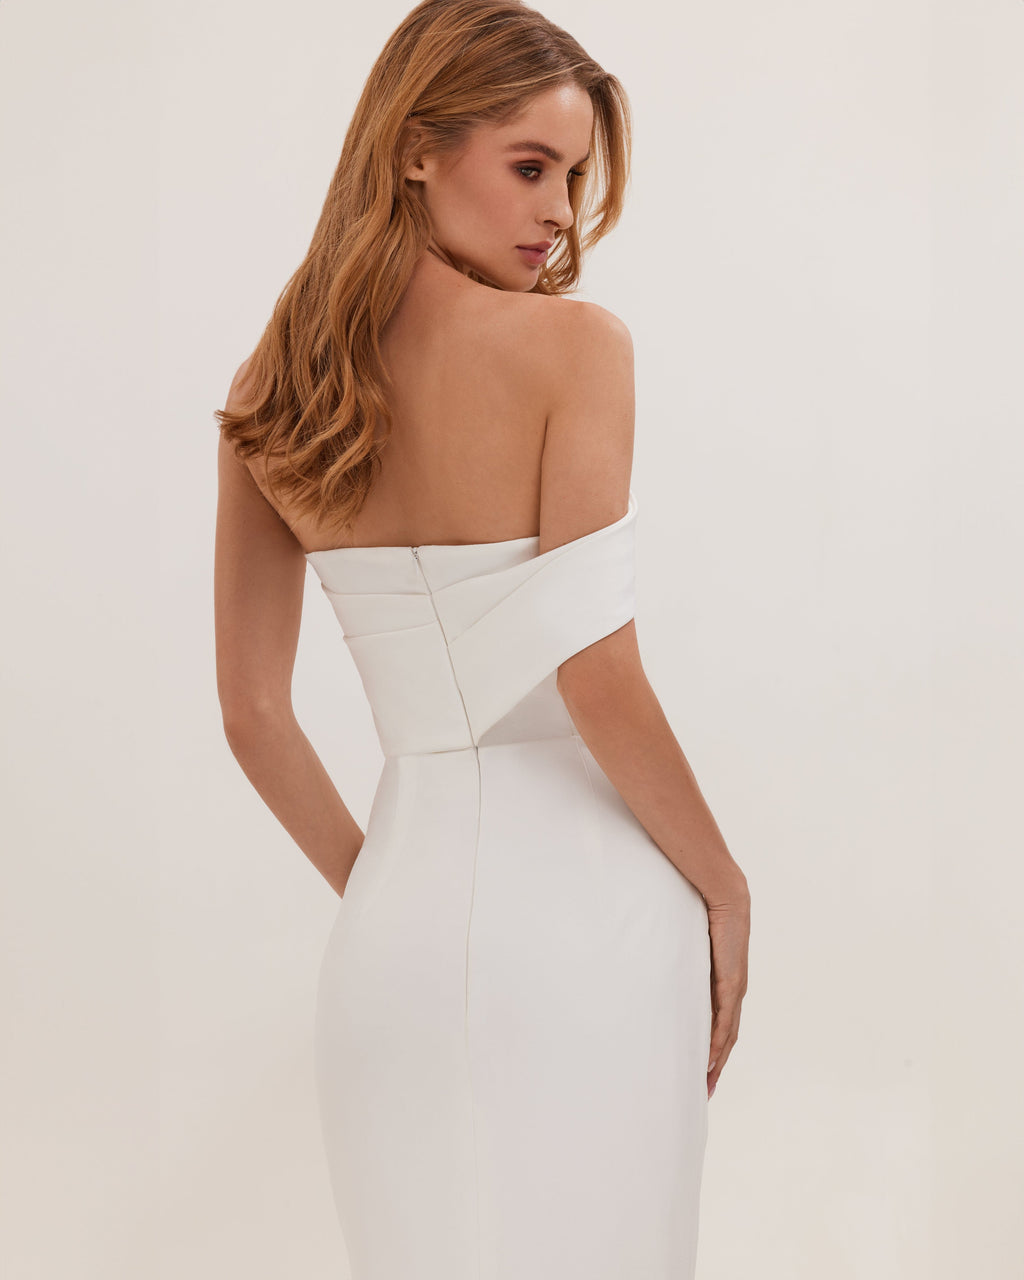 White Classy midi dress with open neckline